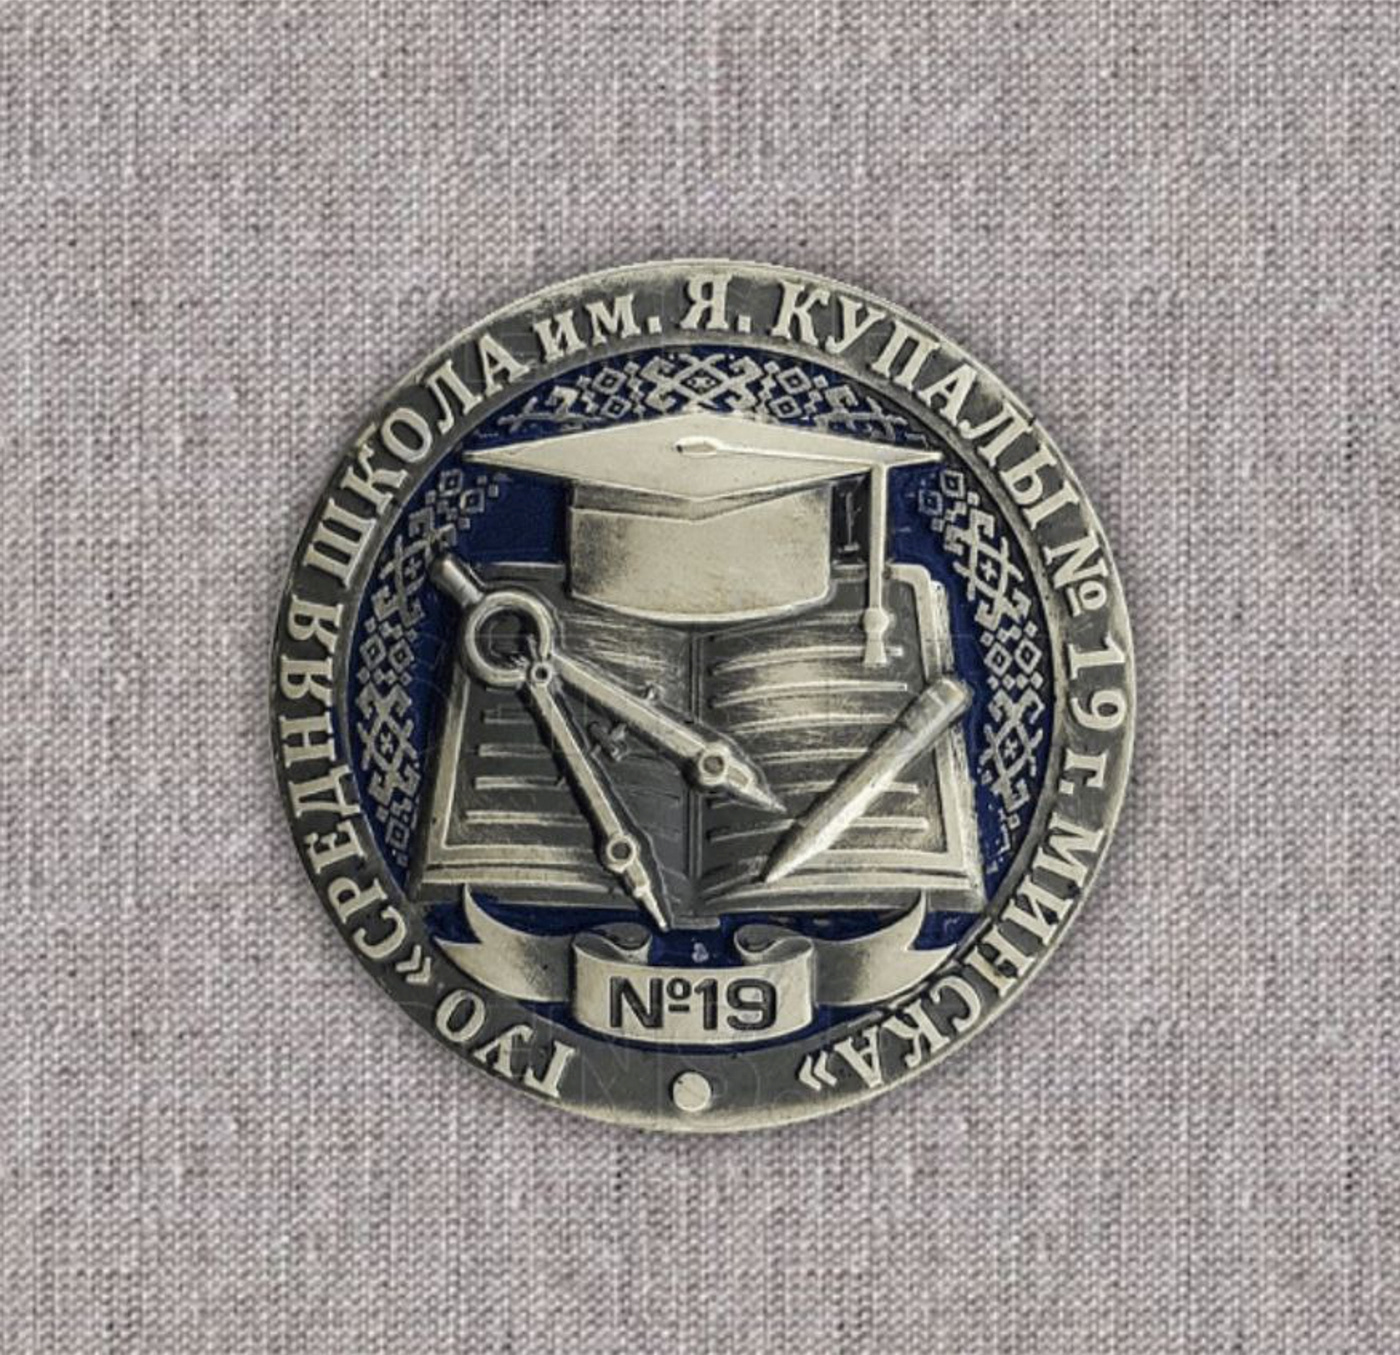 Image may contain: emblem and badge